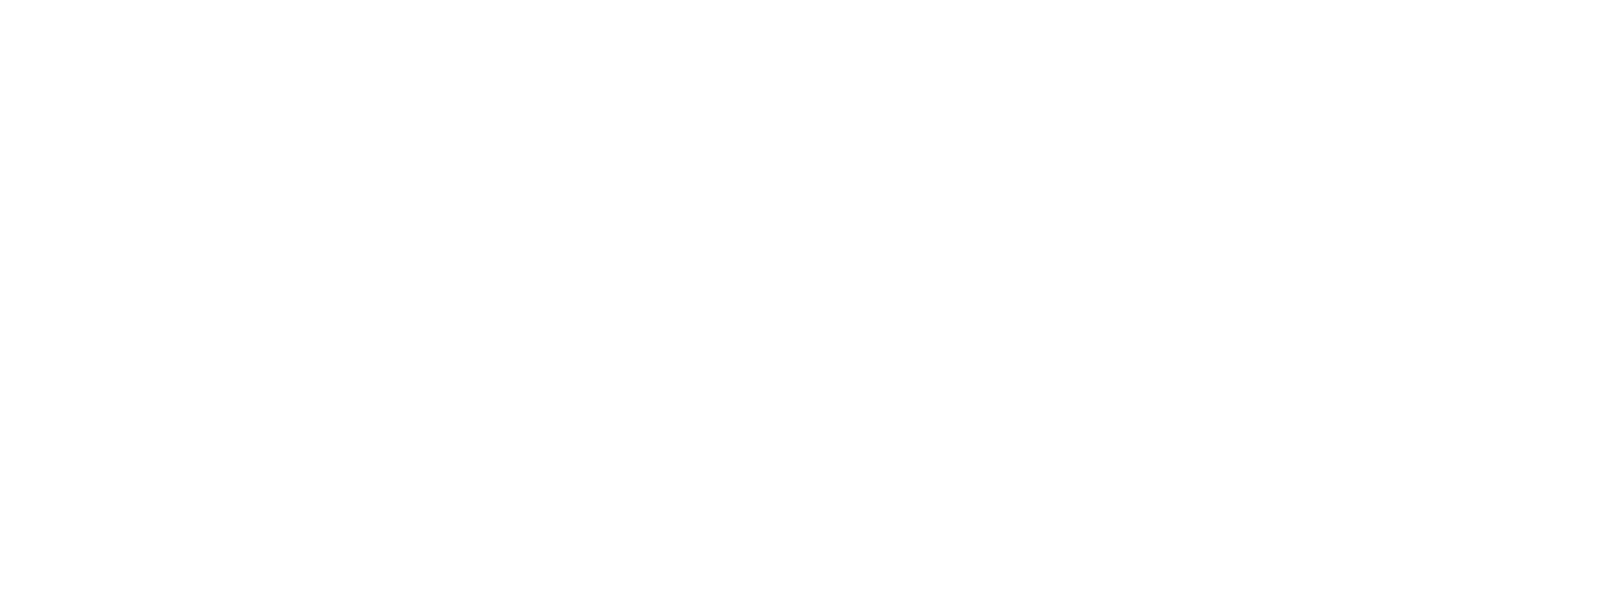 bitbook-editorial-aw-1600